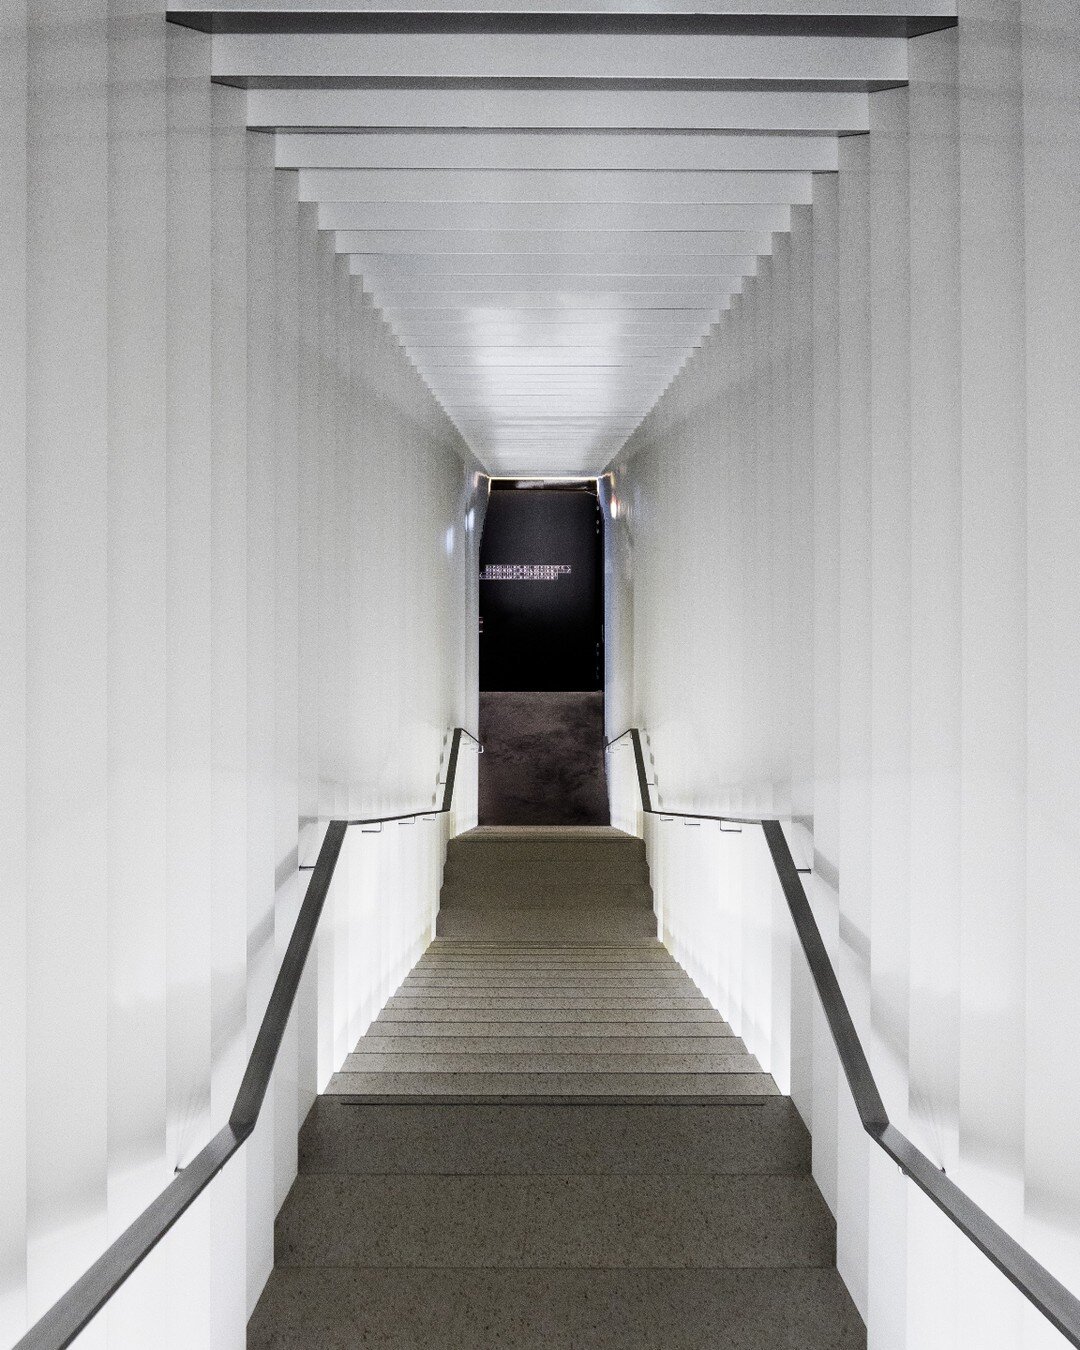 Se perdre dans la g&eacute;om&eacute;trie de cet escalier au MEG est une exp&eacute;rience unique. Une v&eacute;ritable &oelig;uvre d'art architecturale. 📐

Mus&eacute;e Ethnographique (MEG)
Geneva, Switzerland
&copy; crisisvisuals.com

&bull;
&bull